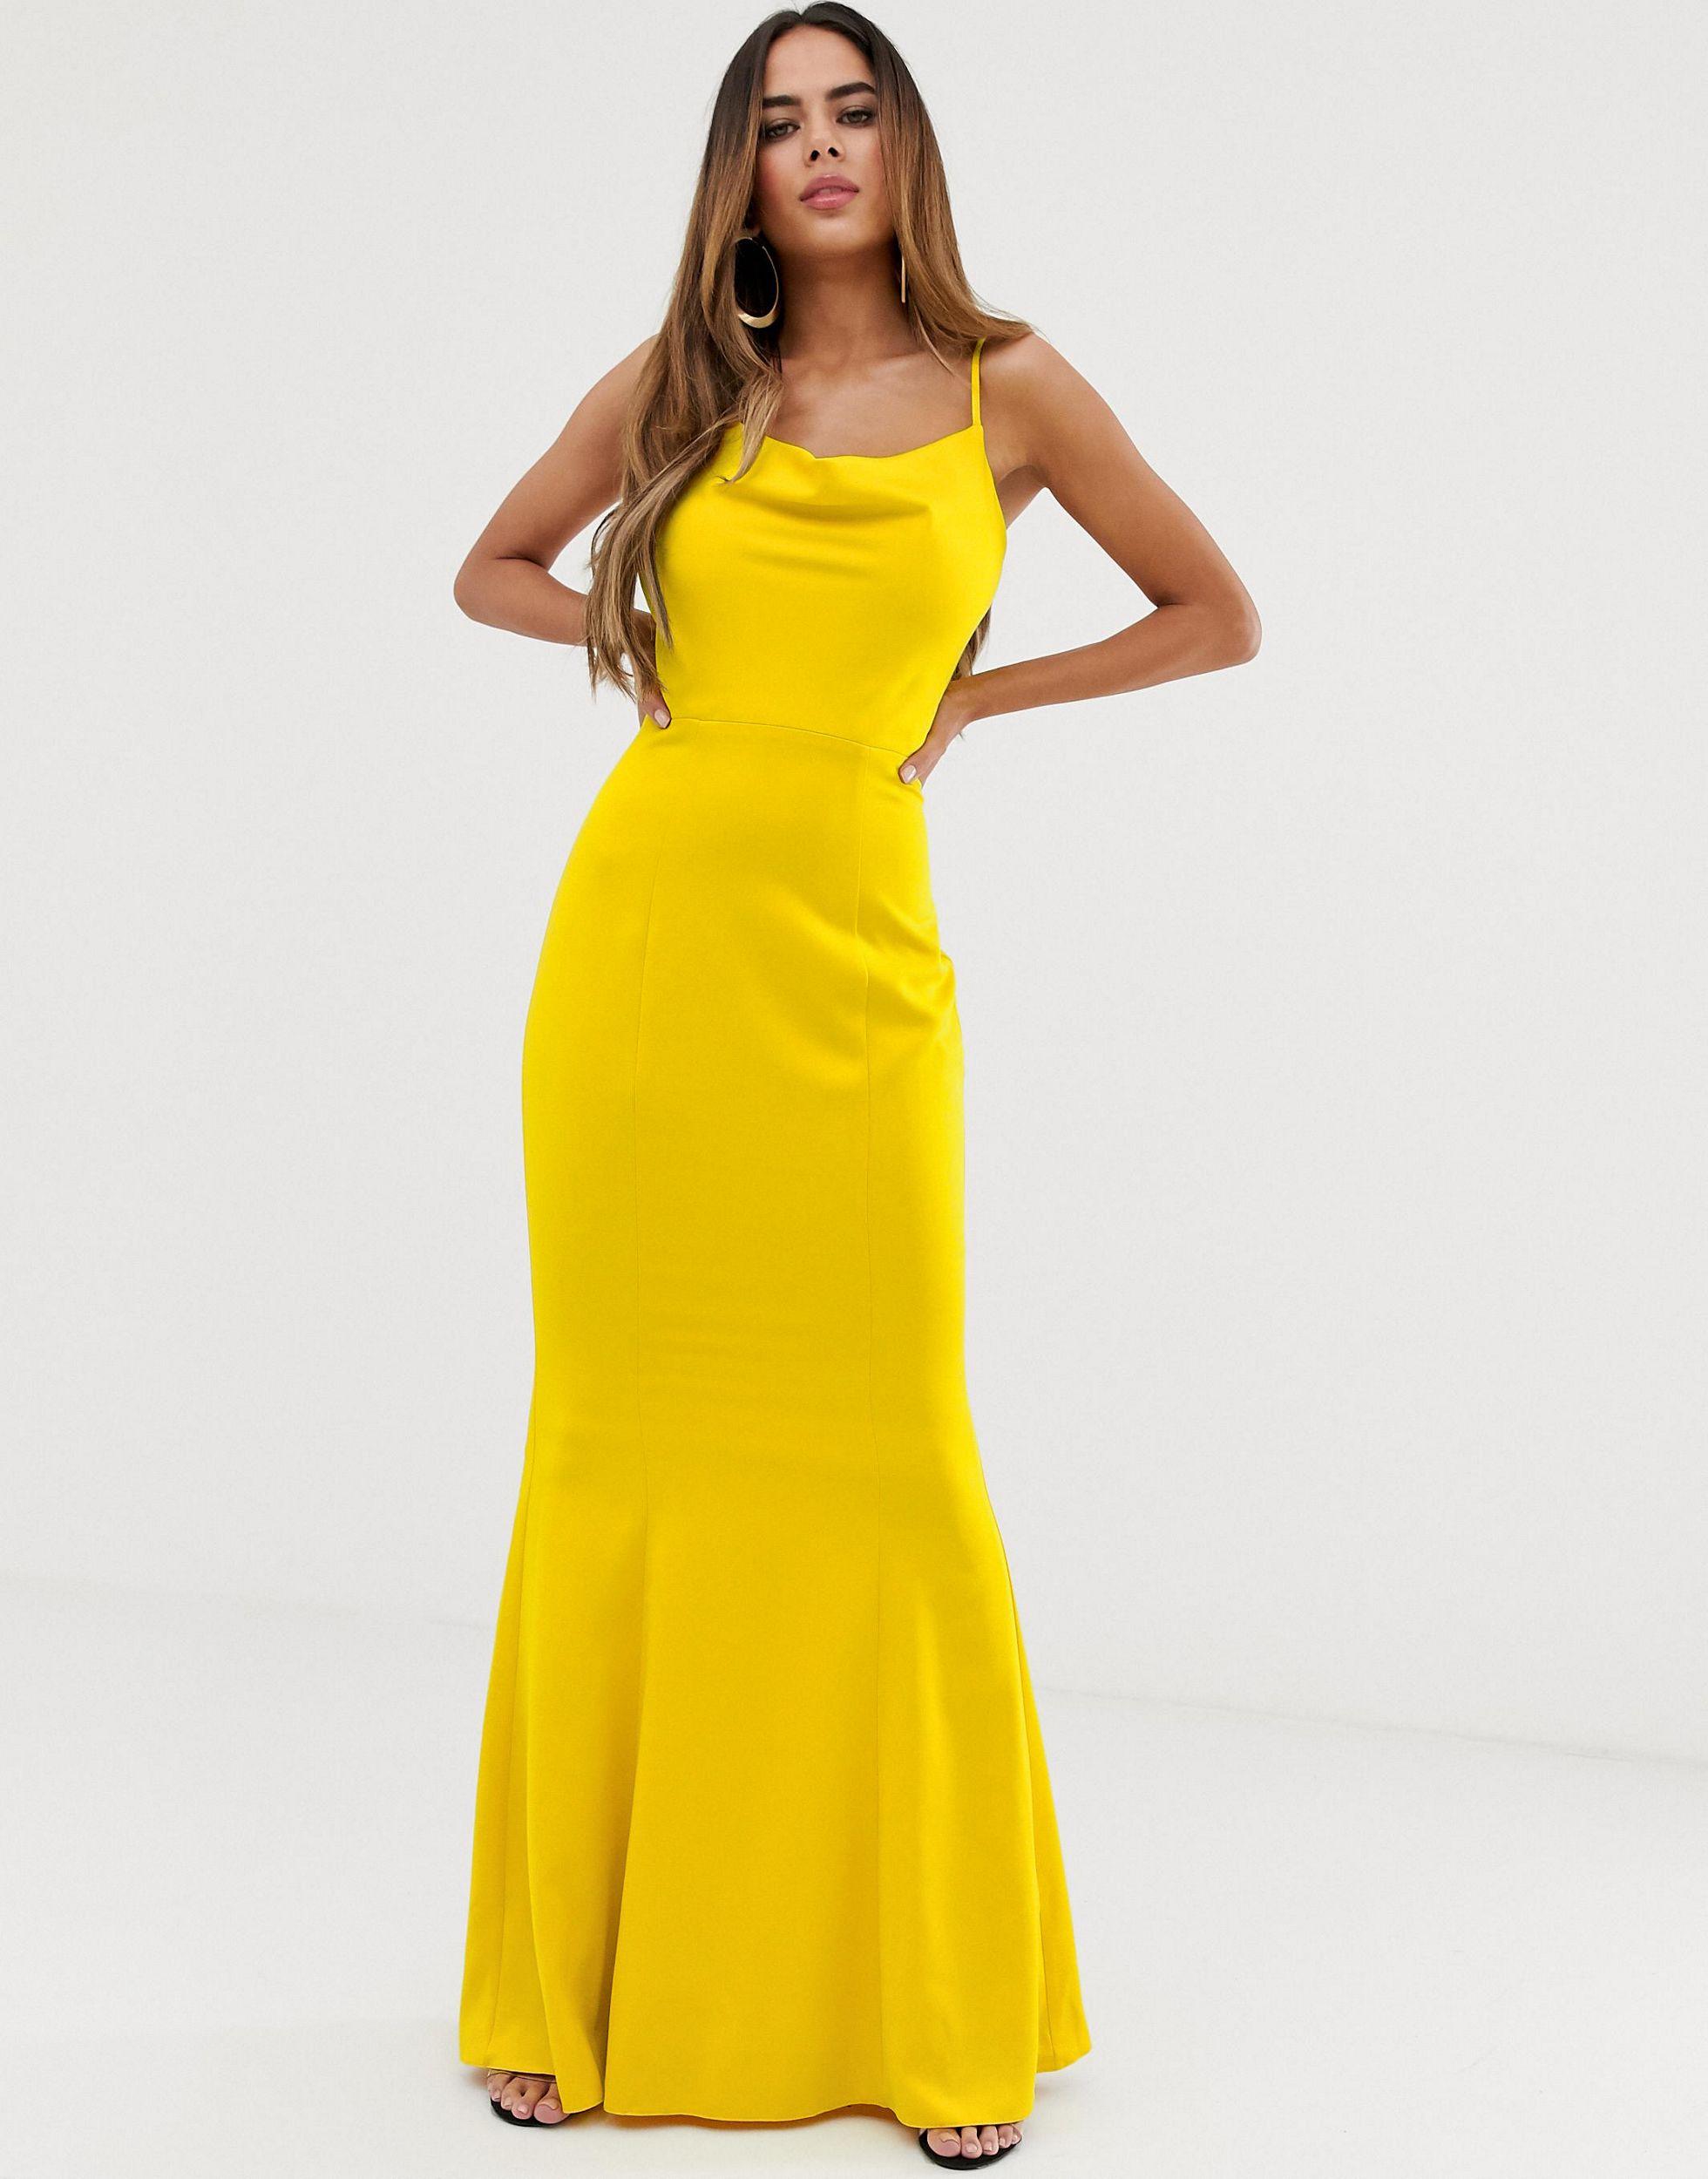 lipsy london yellow dress